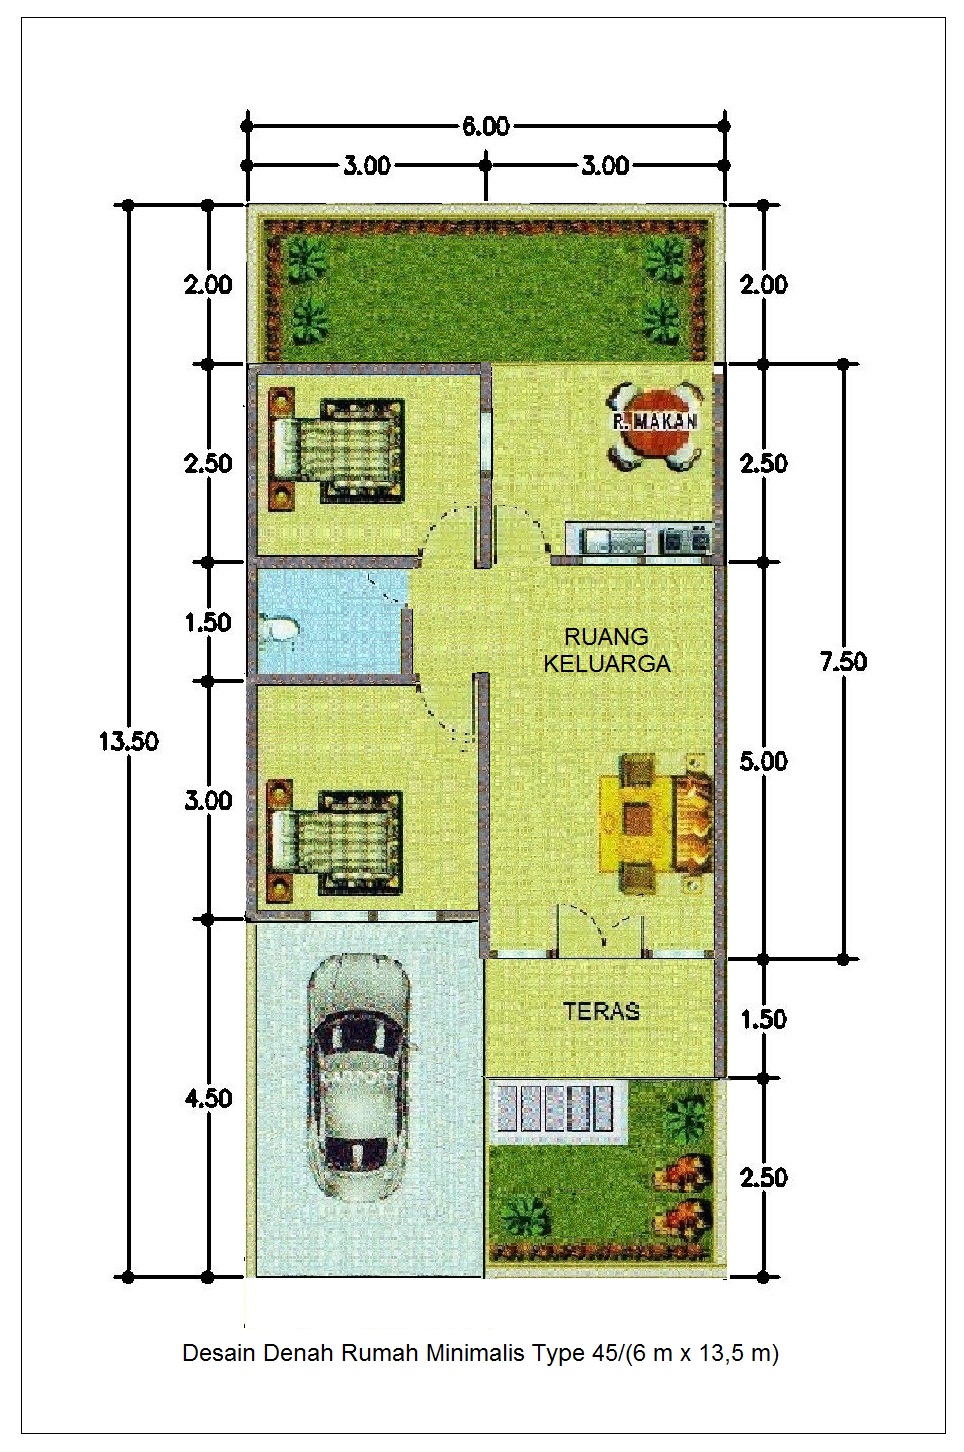 Desain Denah Rumah Minimalis Type 45 6m X 135m Info Properti